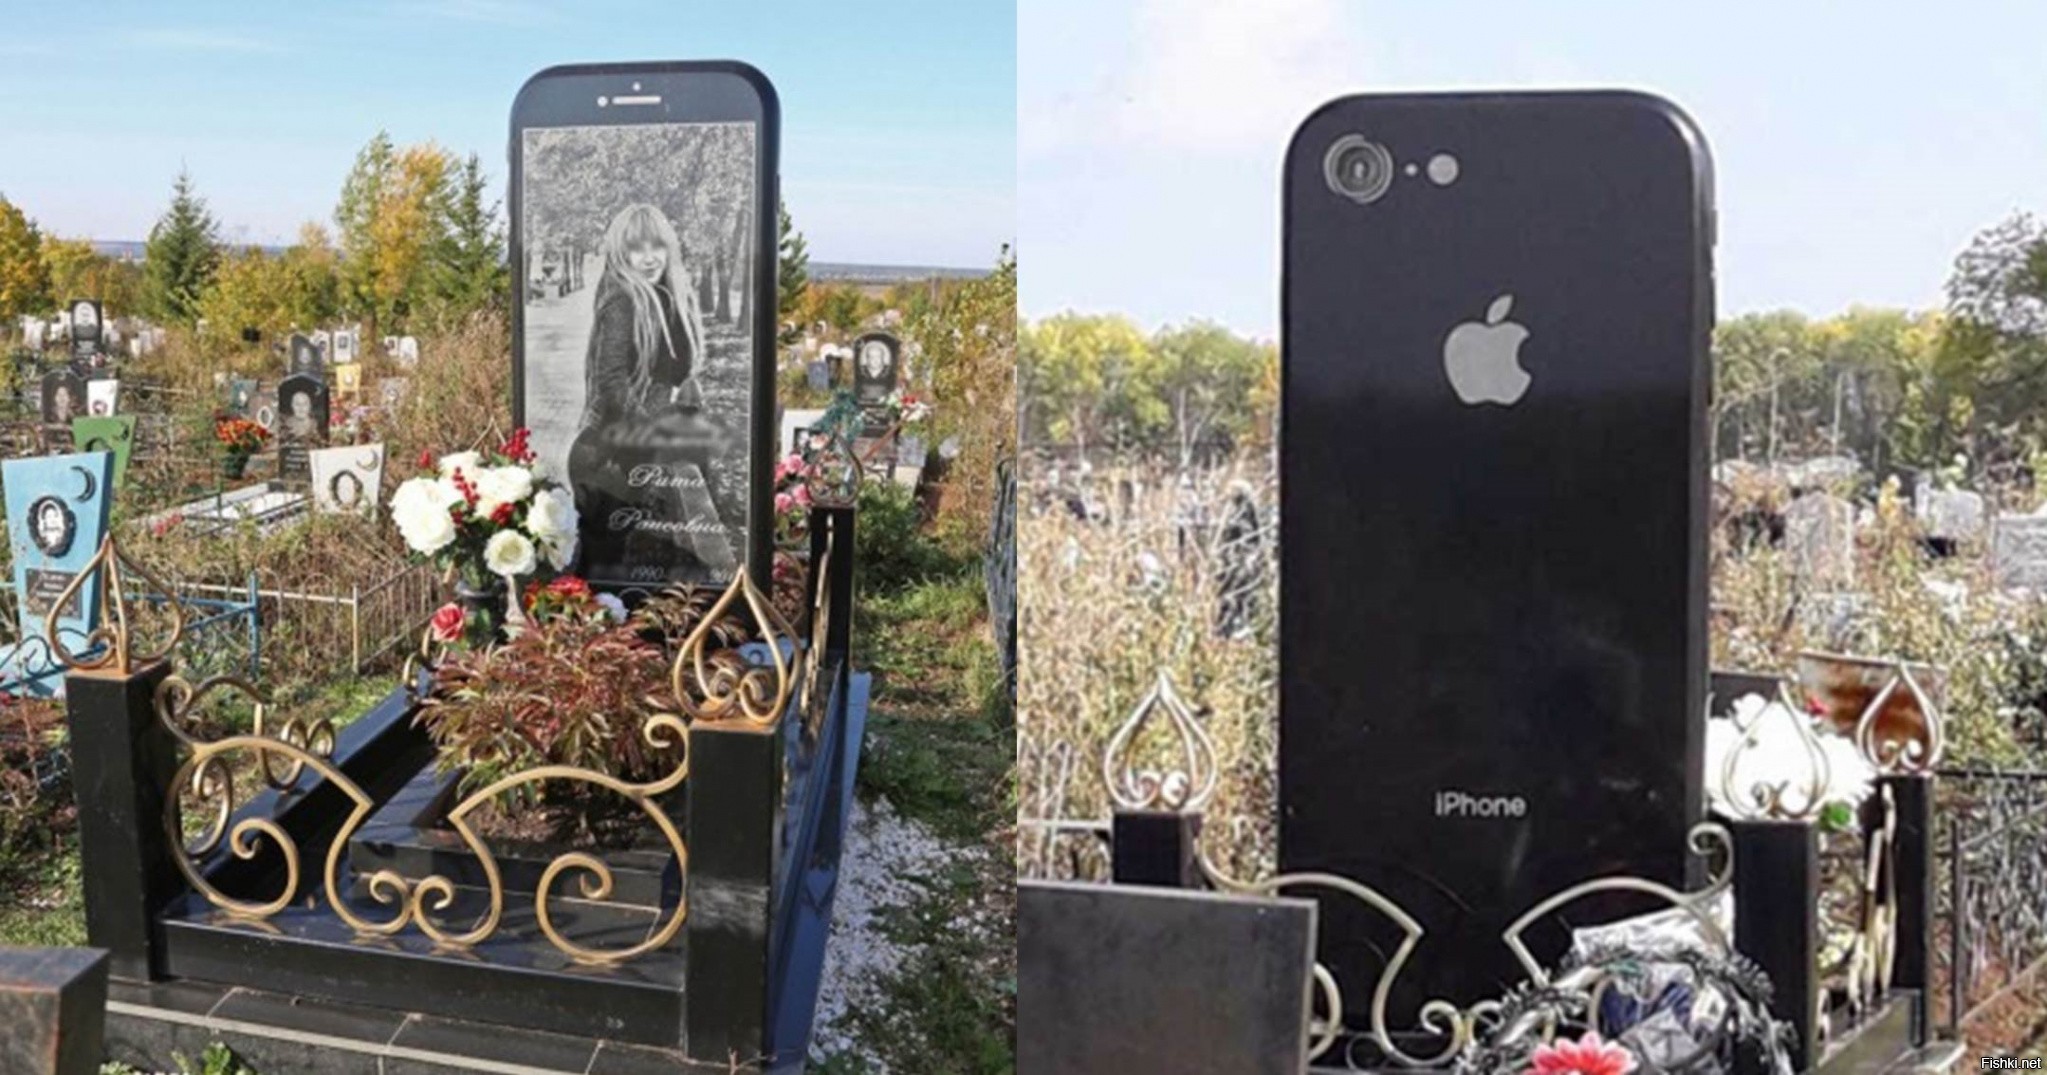 Уфа кладбище надгробие айфон